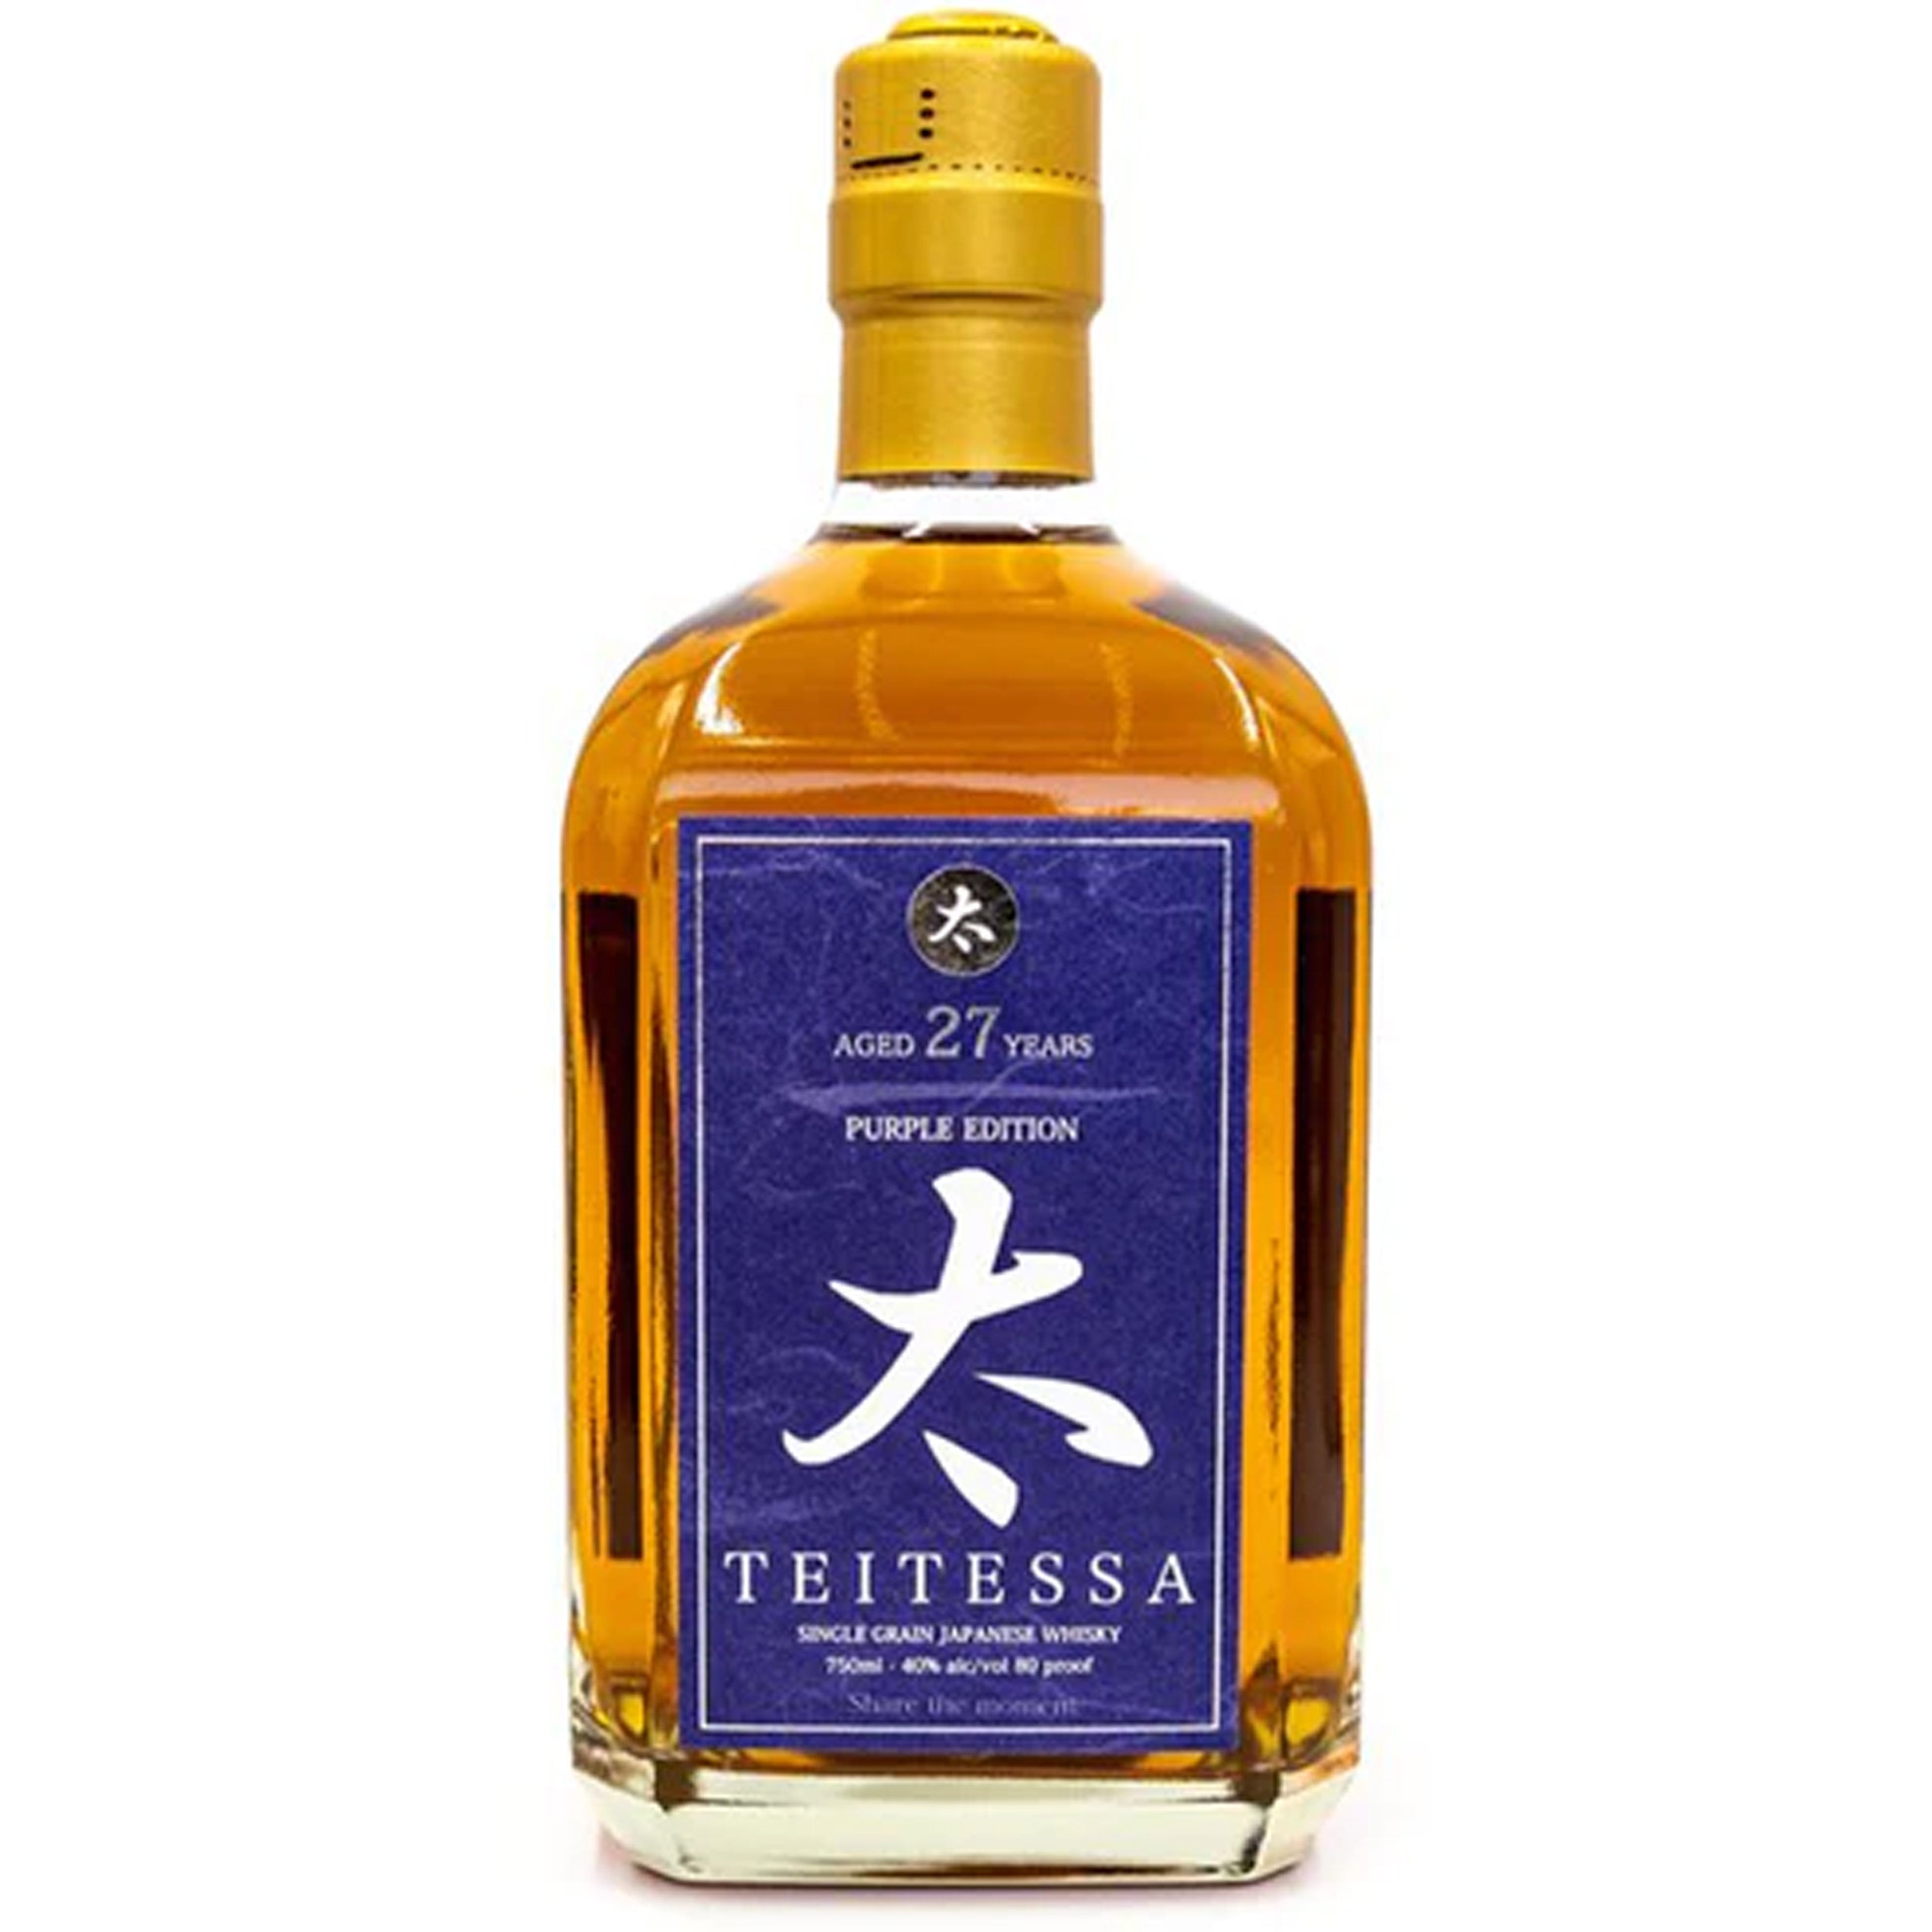 Teitessa 27 Year Old Japanese Whisky